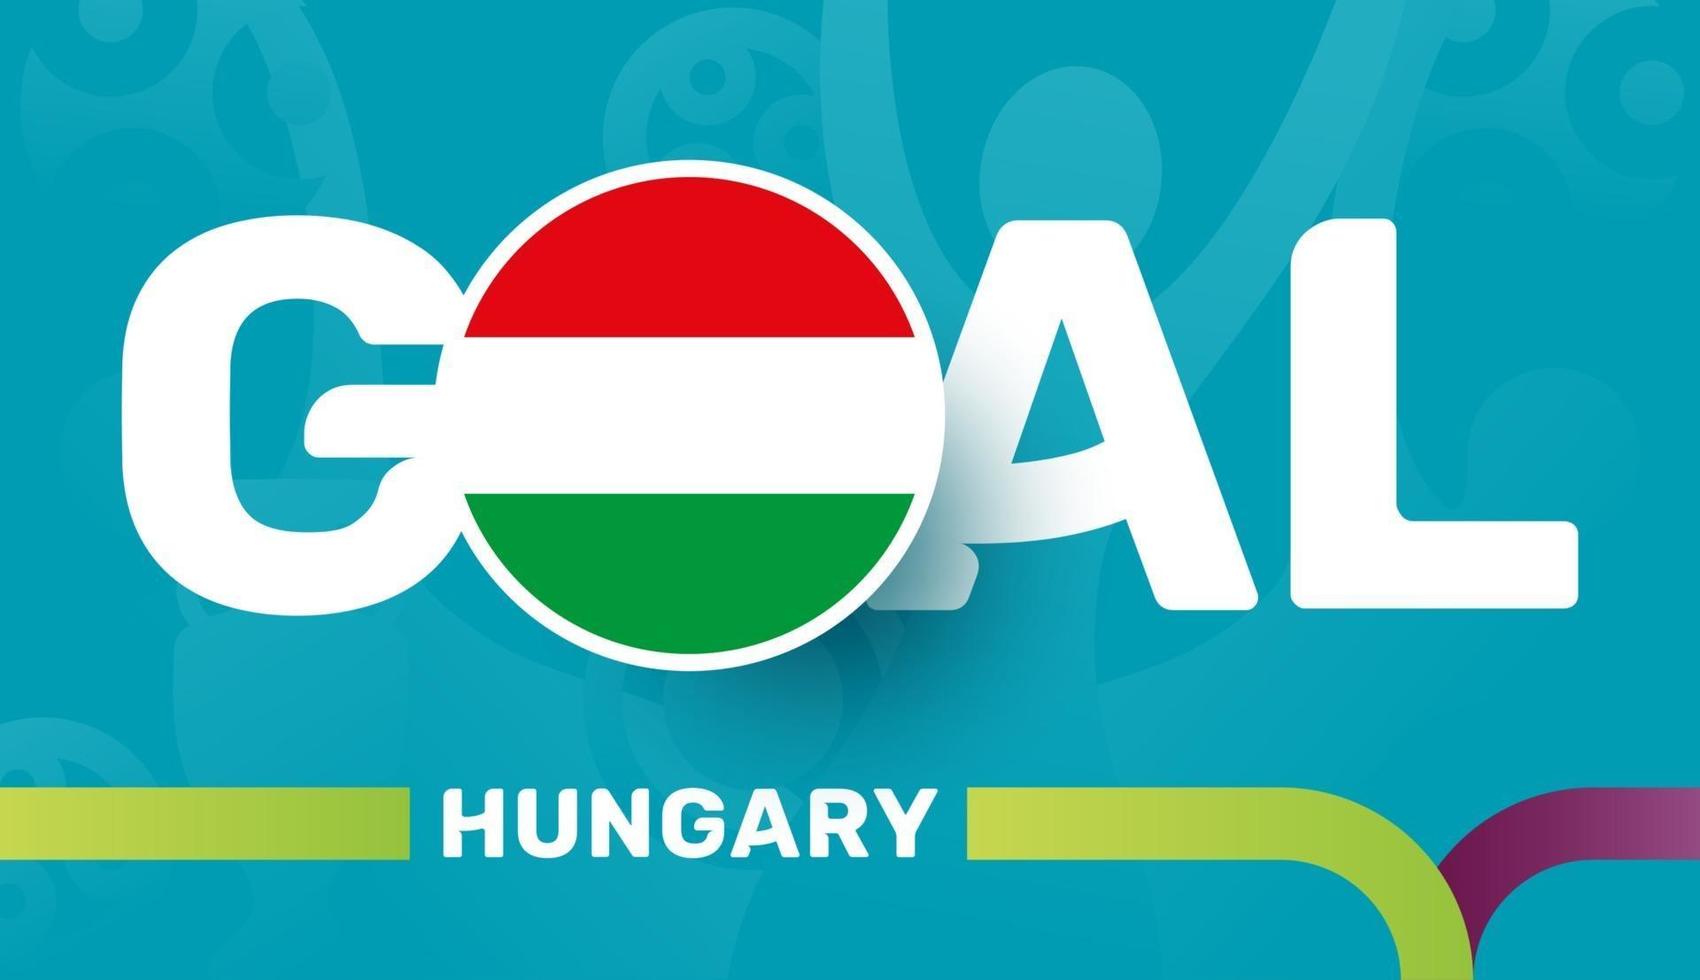 hungary flag and Slogan goal on european 2020 football background. soccer tournamet Vector illustration